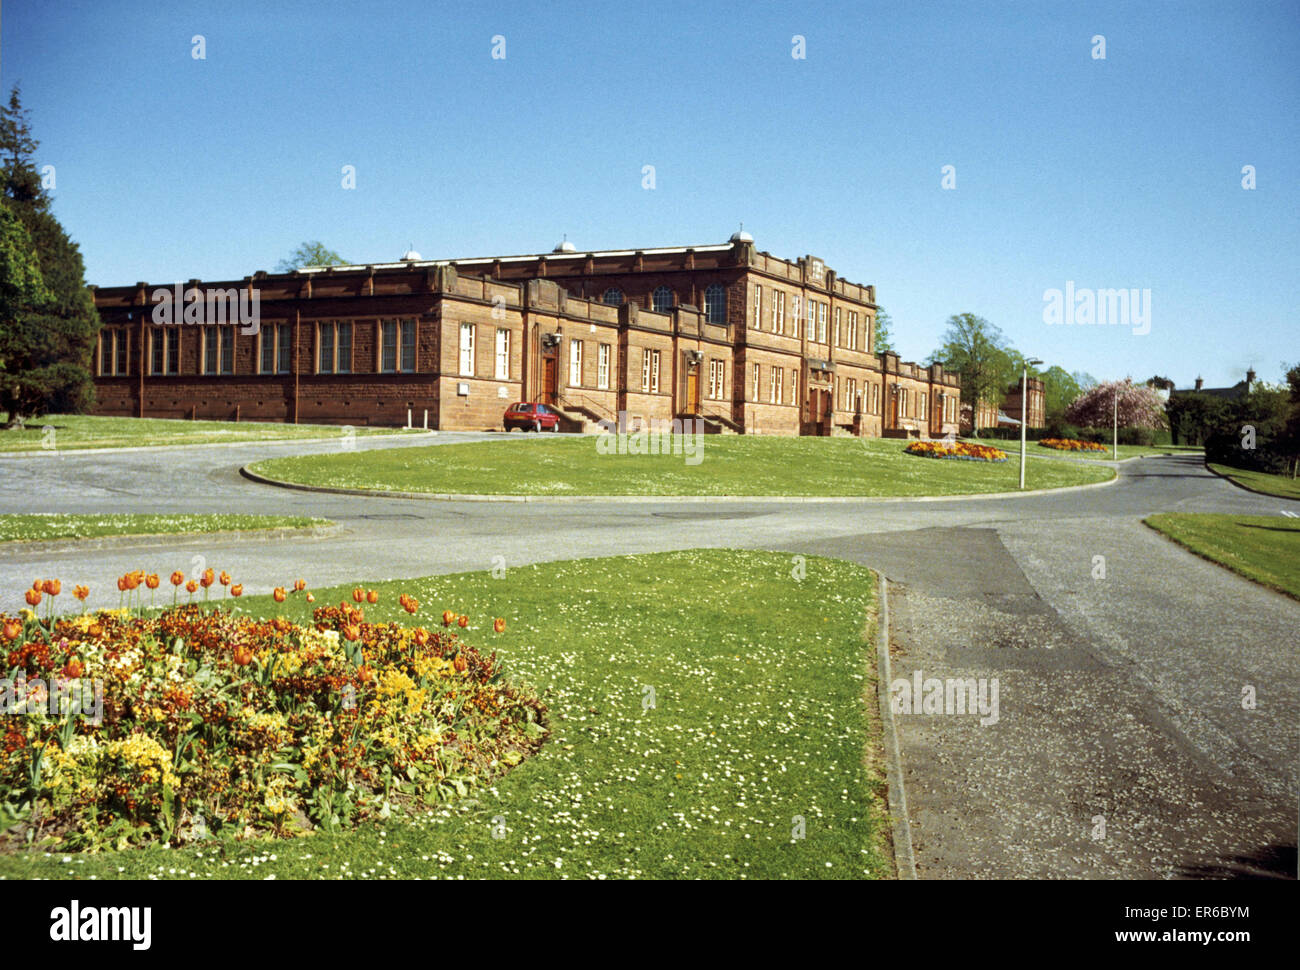 Die Crichton ist eine institutionelle Campus in Dumfries, Südwesten Schottlands. Es enthält Teil von Dumfries und Galloway Royal Infirmary, ein Gewerbegebiet und Crichton Universitätscampus, dient als ein remote Campus für die Universität von Glasgow, Univer Stockfoto